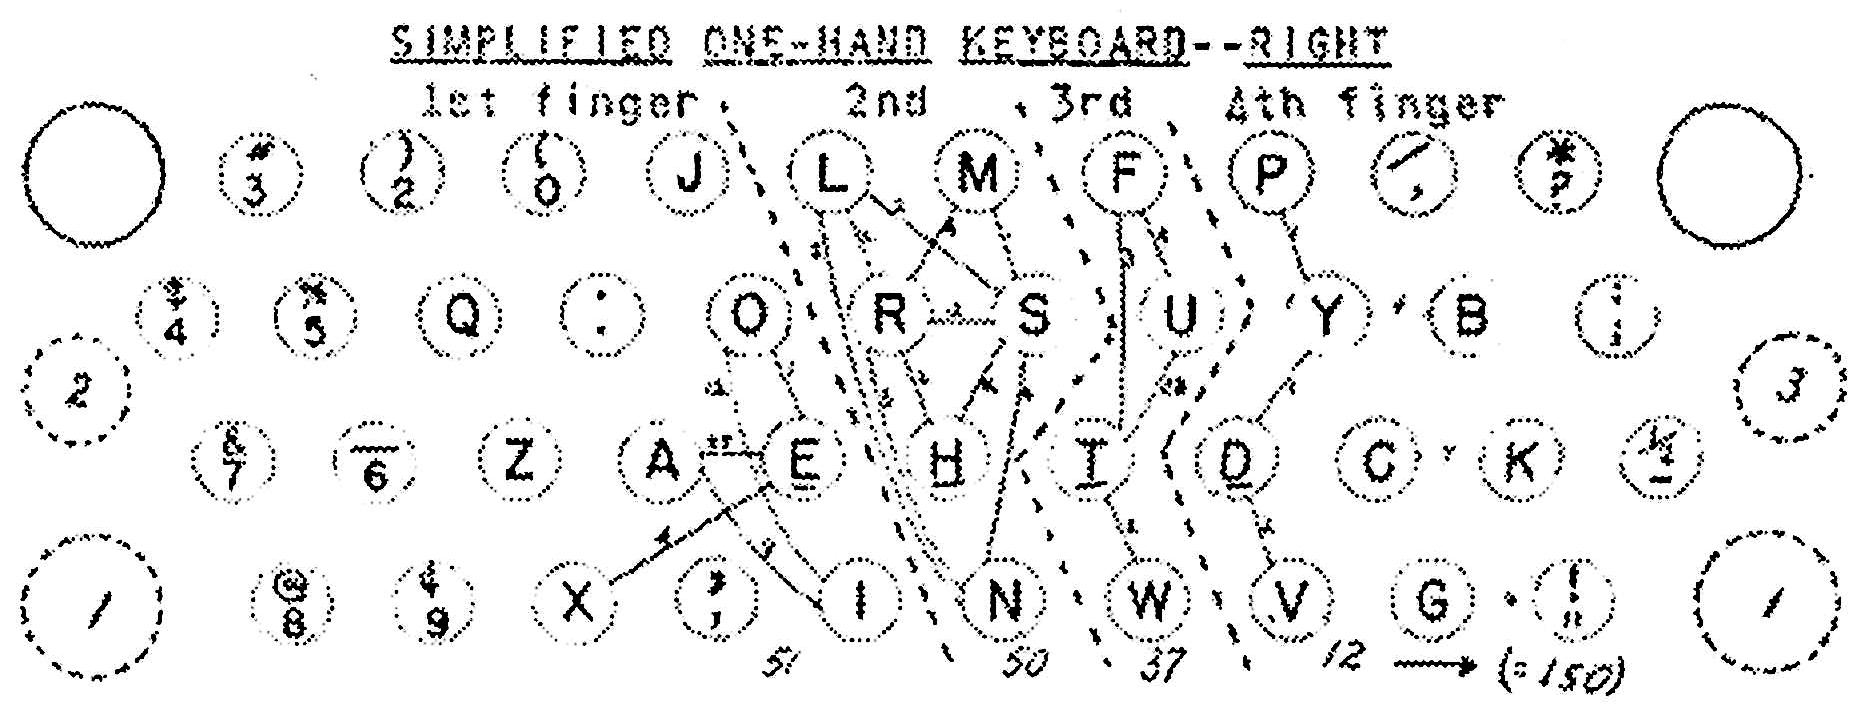 ドボラック式片手配列―右手用（『Handicap』誌1948年4月号）